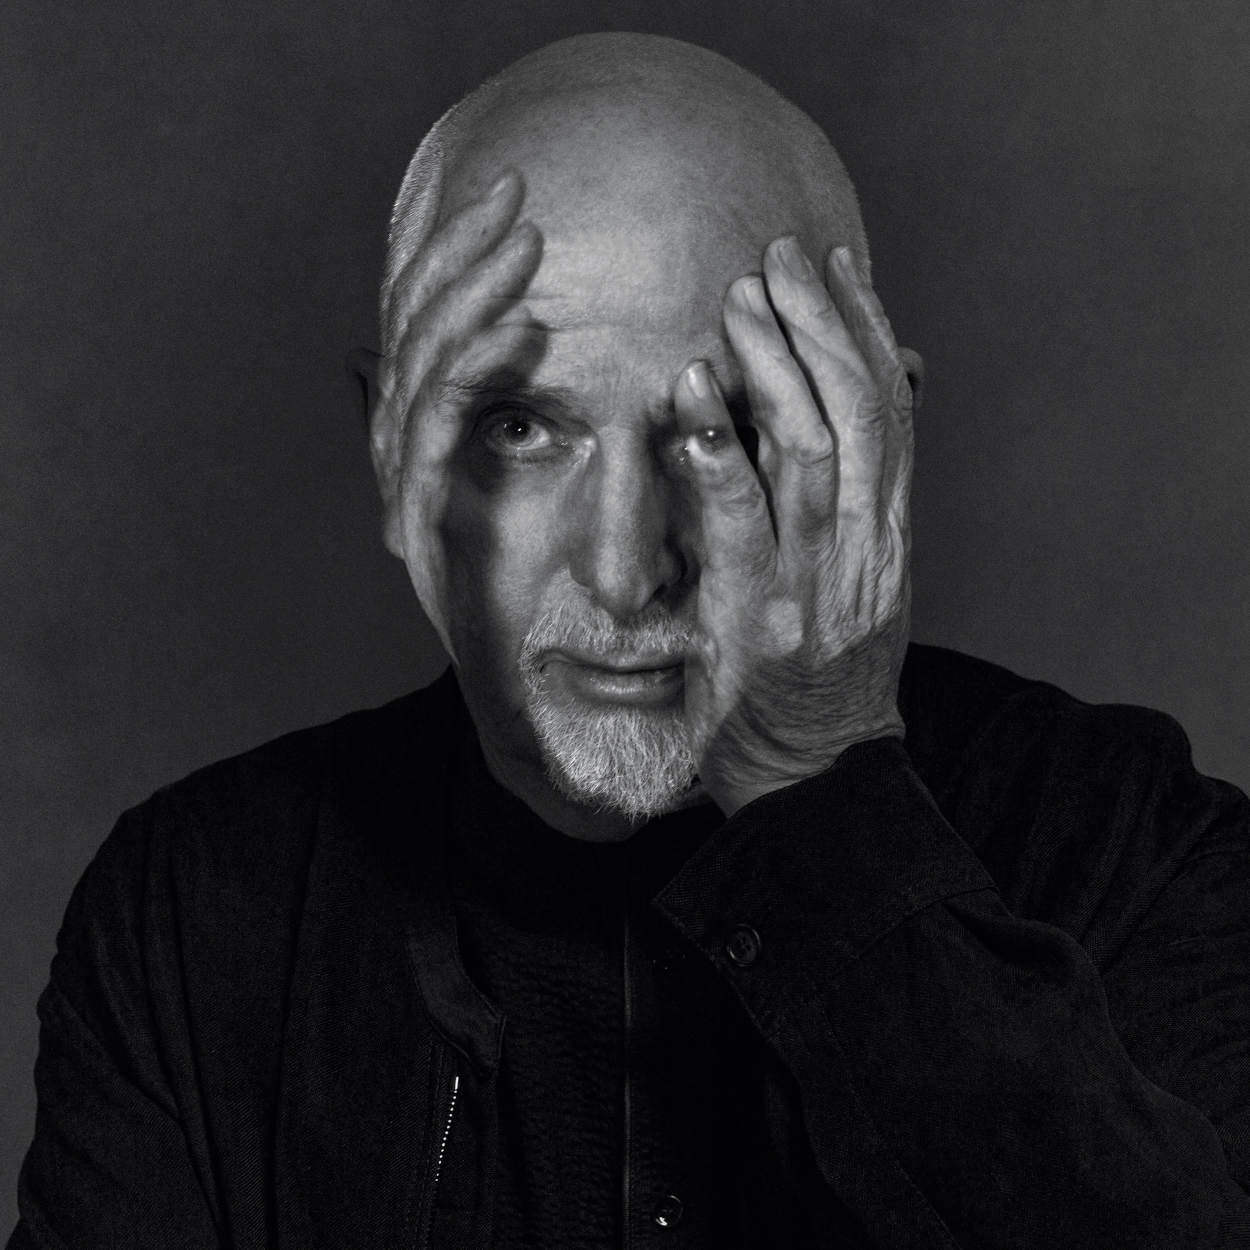 Peter Gabriel / i/o album announced